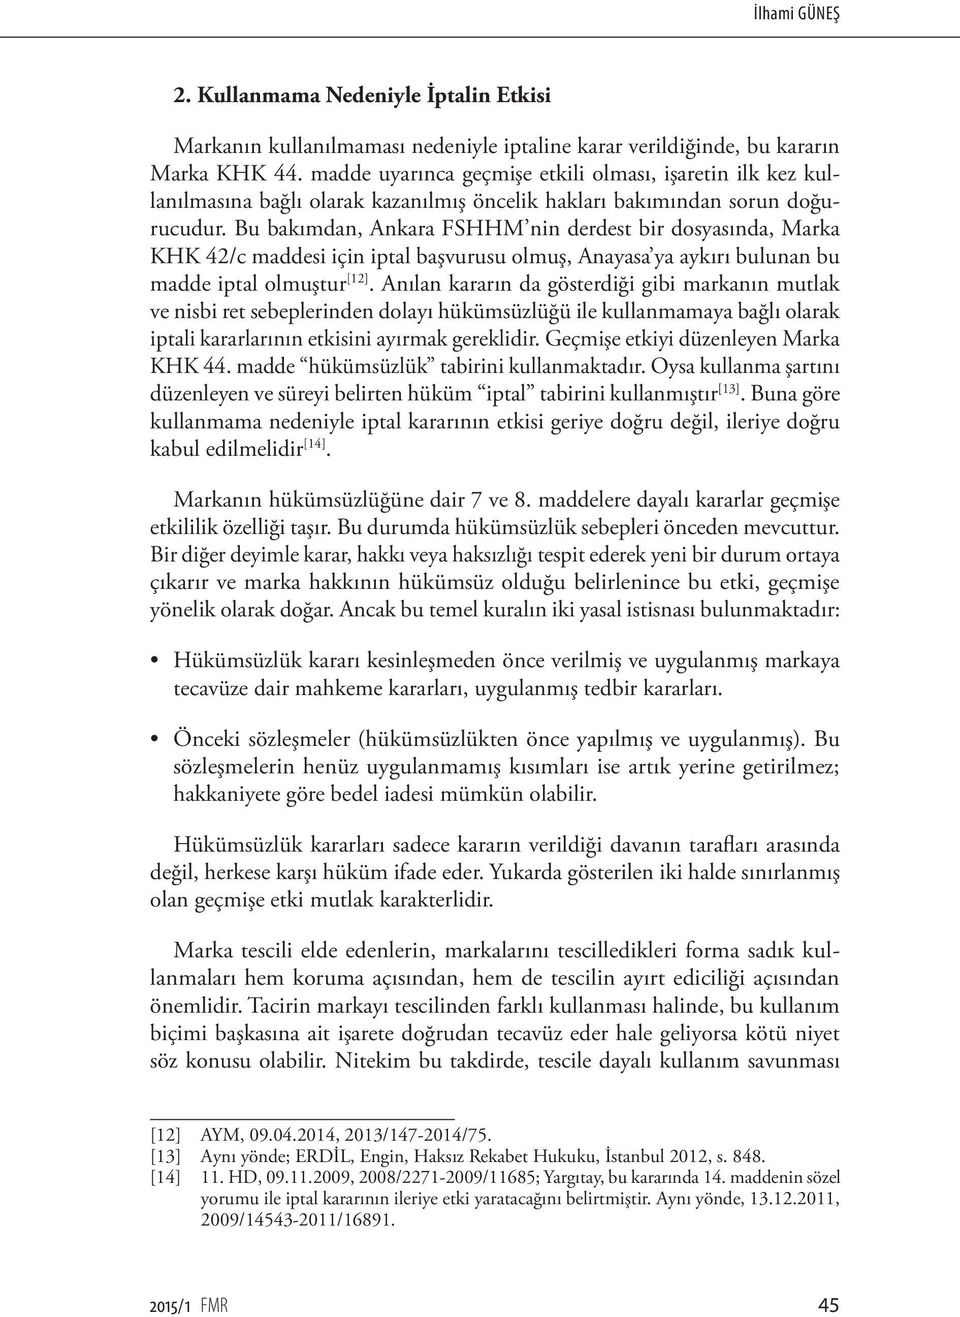 Bu bakımdan, Ankara FSHHM nin derdest bir dosyasında, Marka KHK 42/c maddesi için iptal başvurusu olmuş, Anayasa ya aykırı bulunan bu madde iptal olmuştur [12].